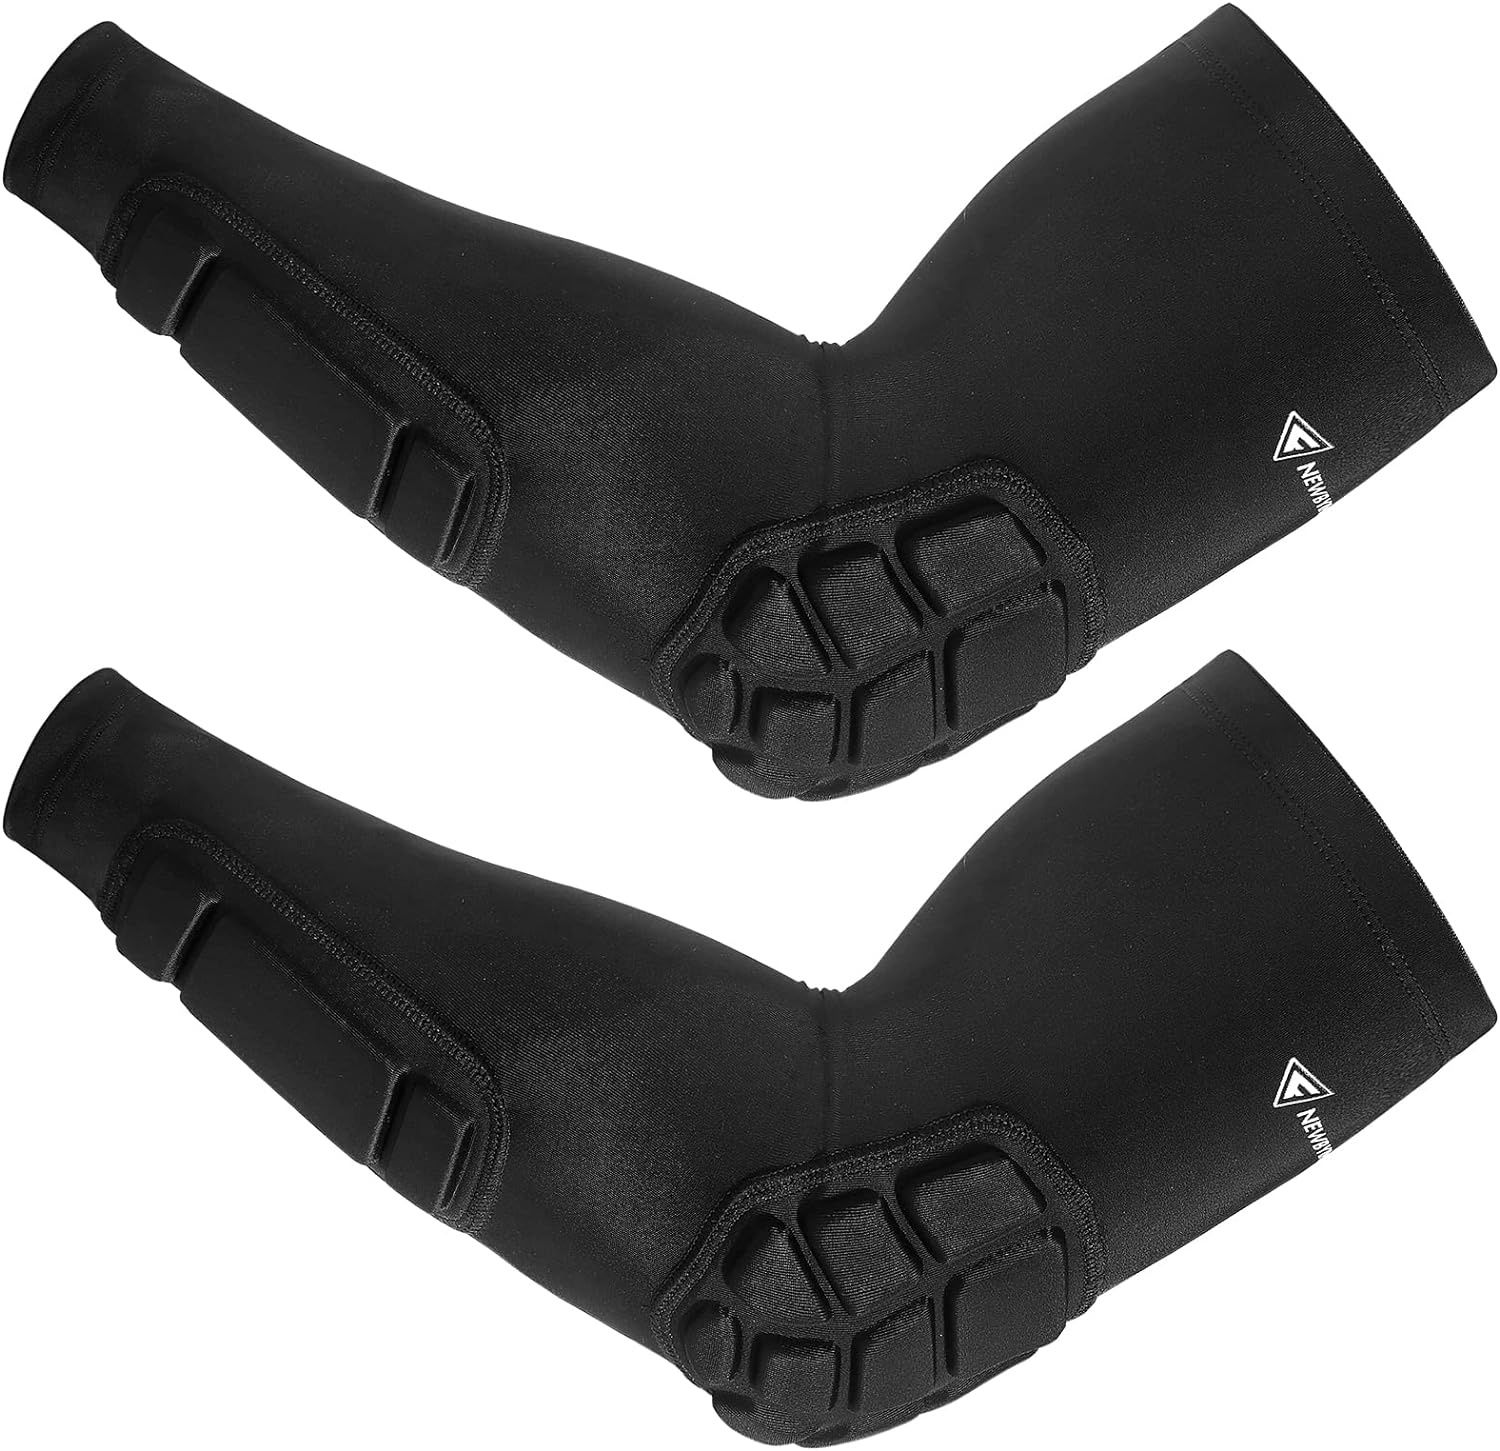 Защитные мягкие нарукавники Newbyinn Padded Arm Sleeves, размер L